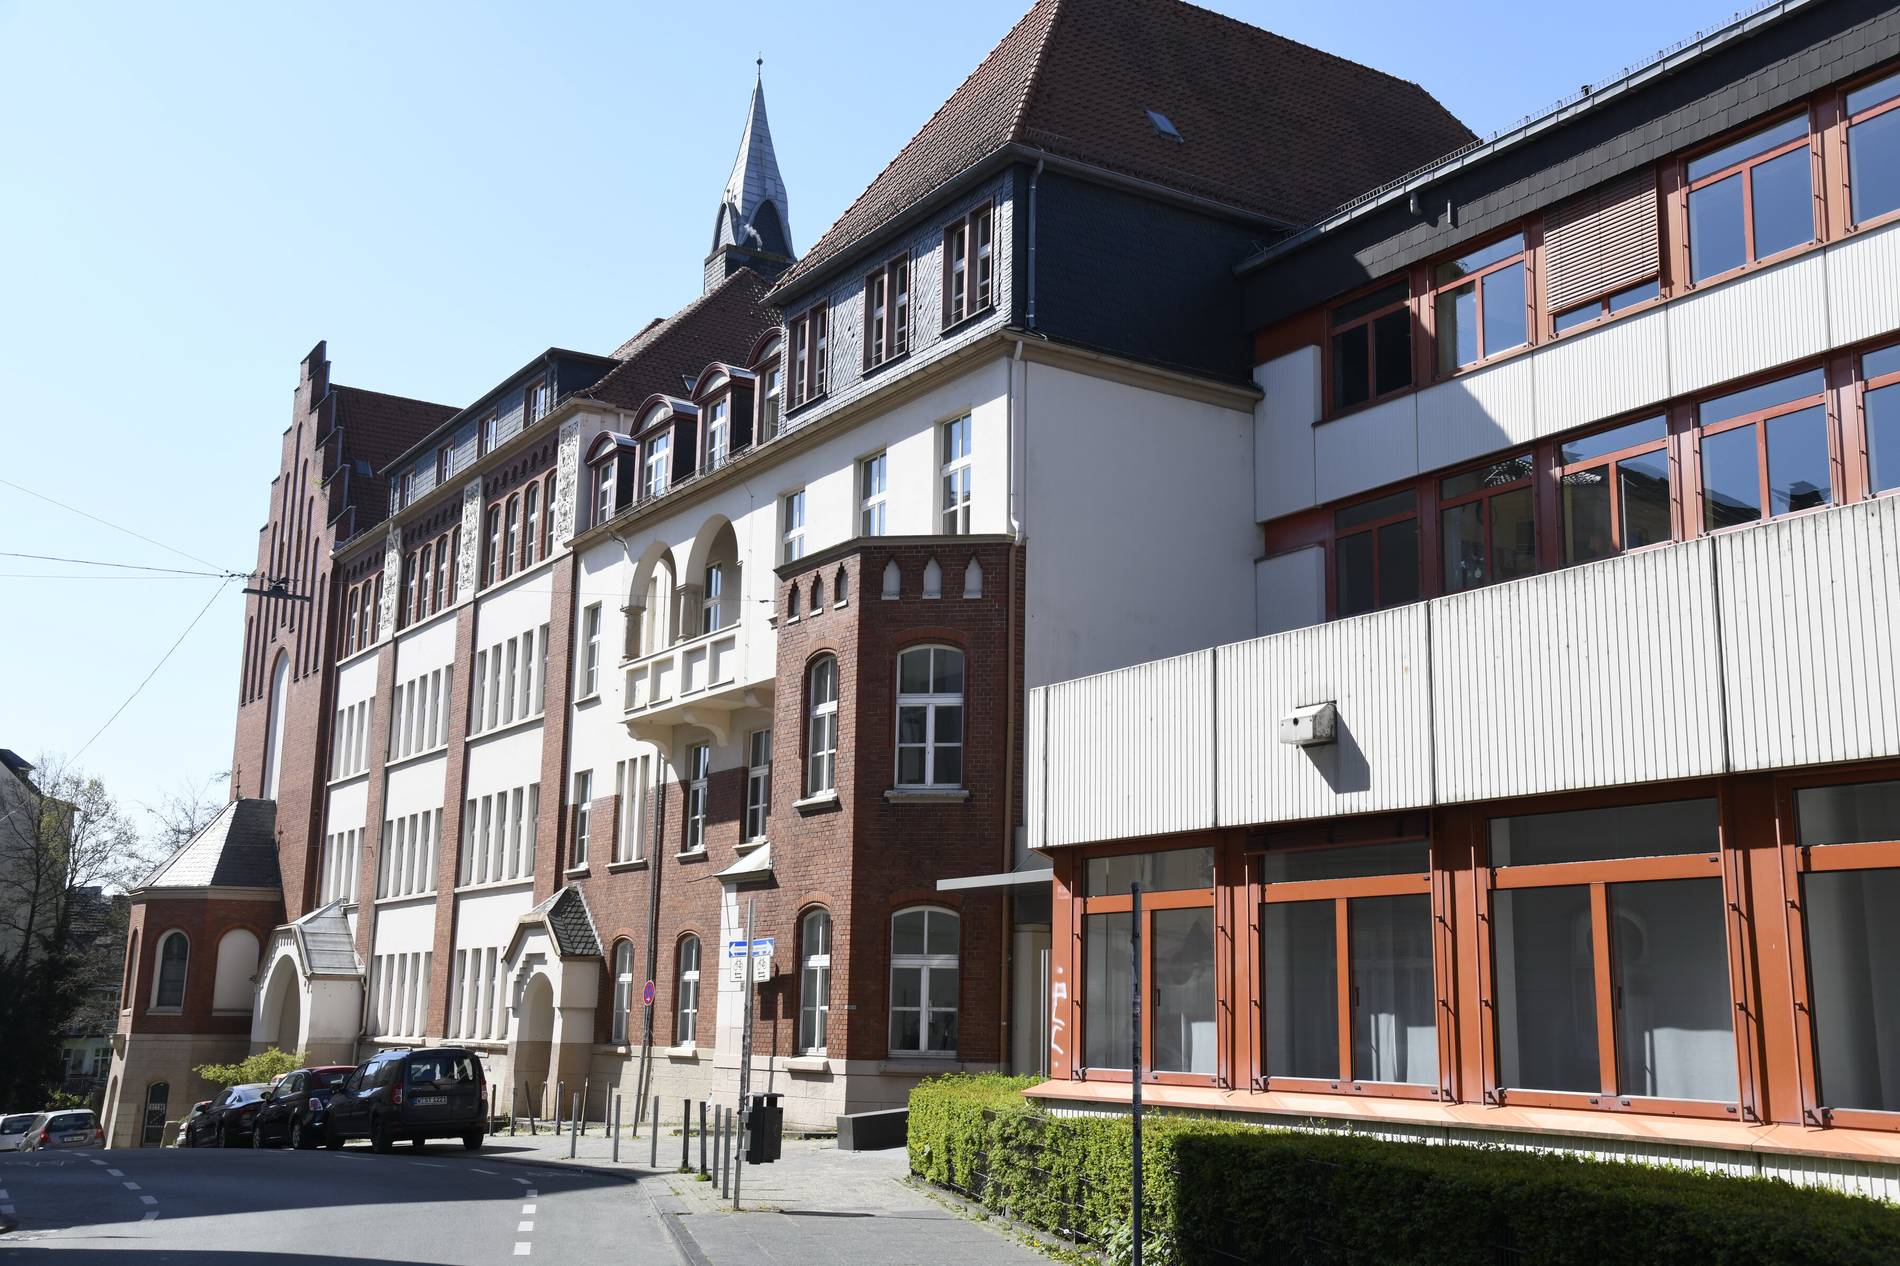 Anmeldezahlen Weiterführende Schulen Aachen 2021